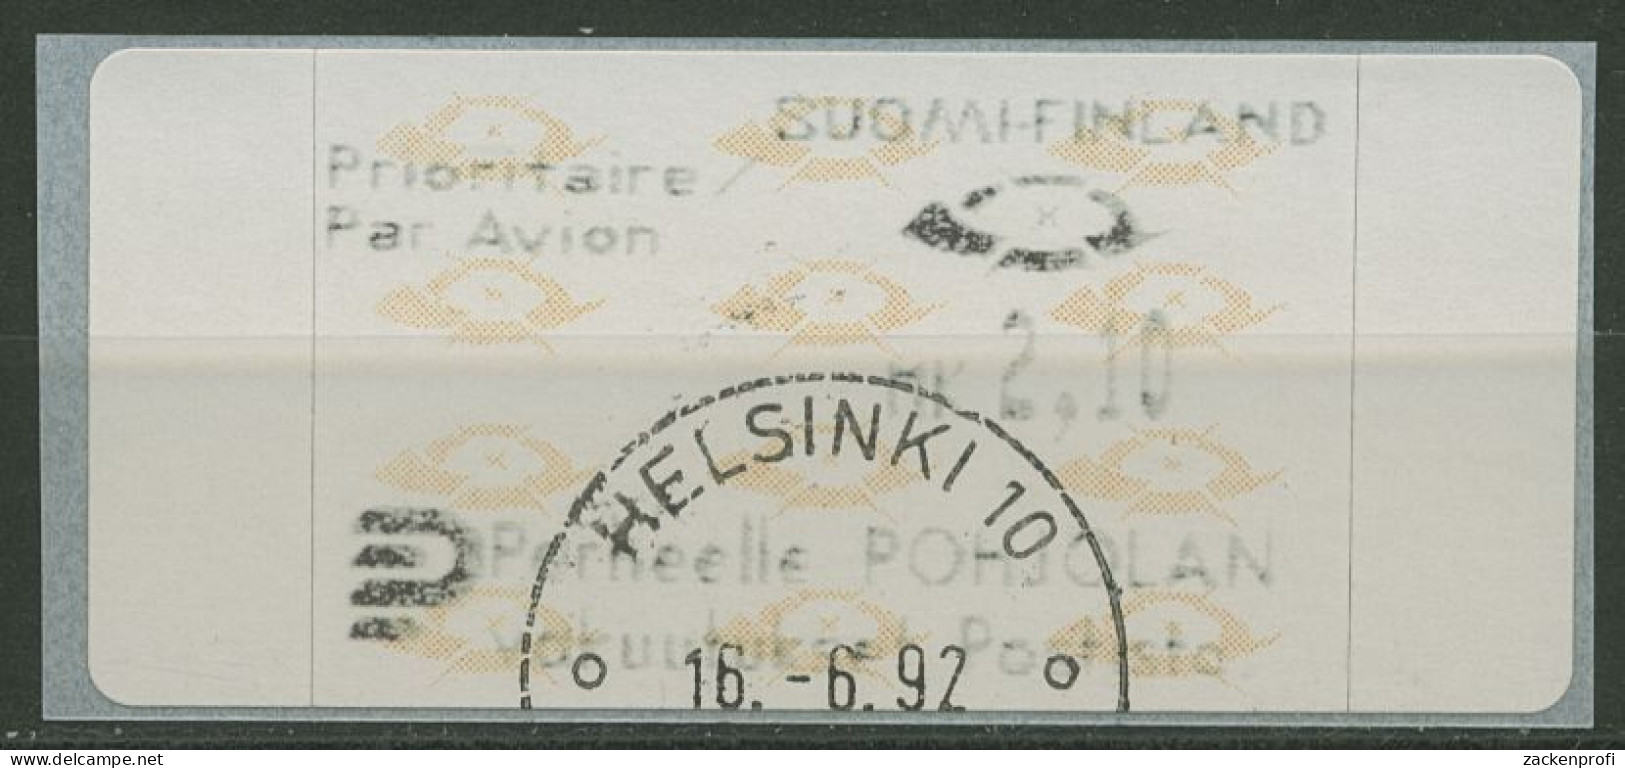 Finnland Automatenmarken 1992 Posthörner Einzelwert ATM 12.3 Z6 Gestempelt - Machine Labels [ATM]